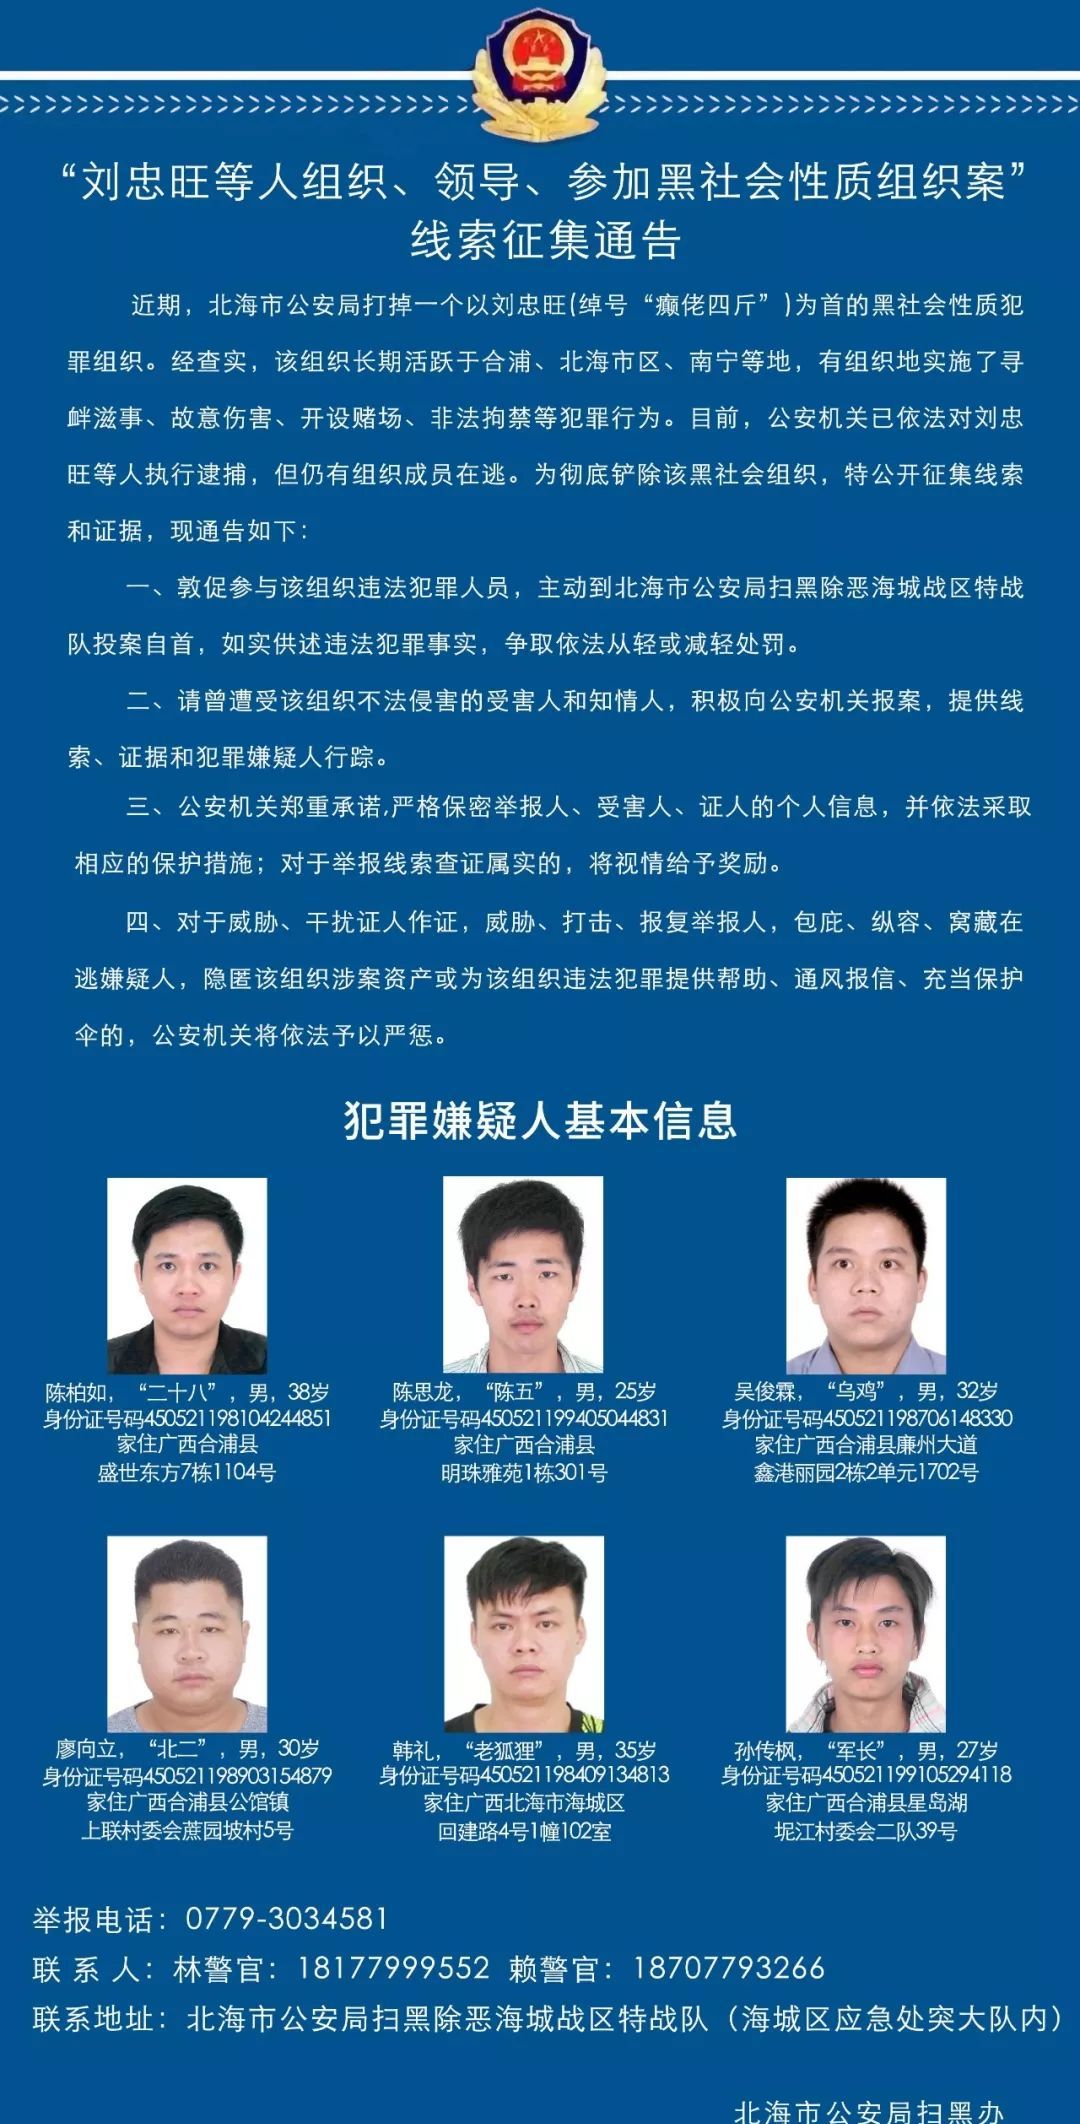 北海警方彻查刘忠旺涉黑案,刑拘33人,漏网之鱼仍在追捕中